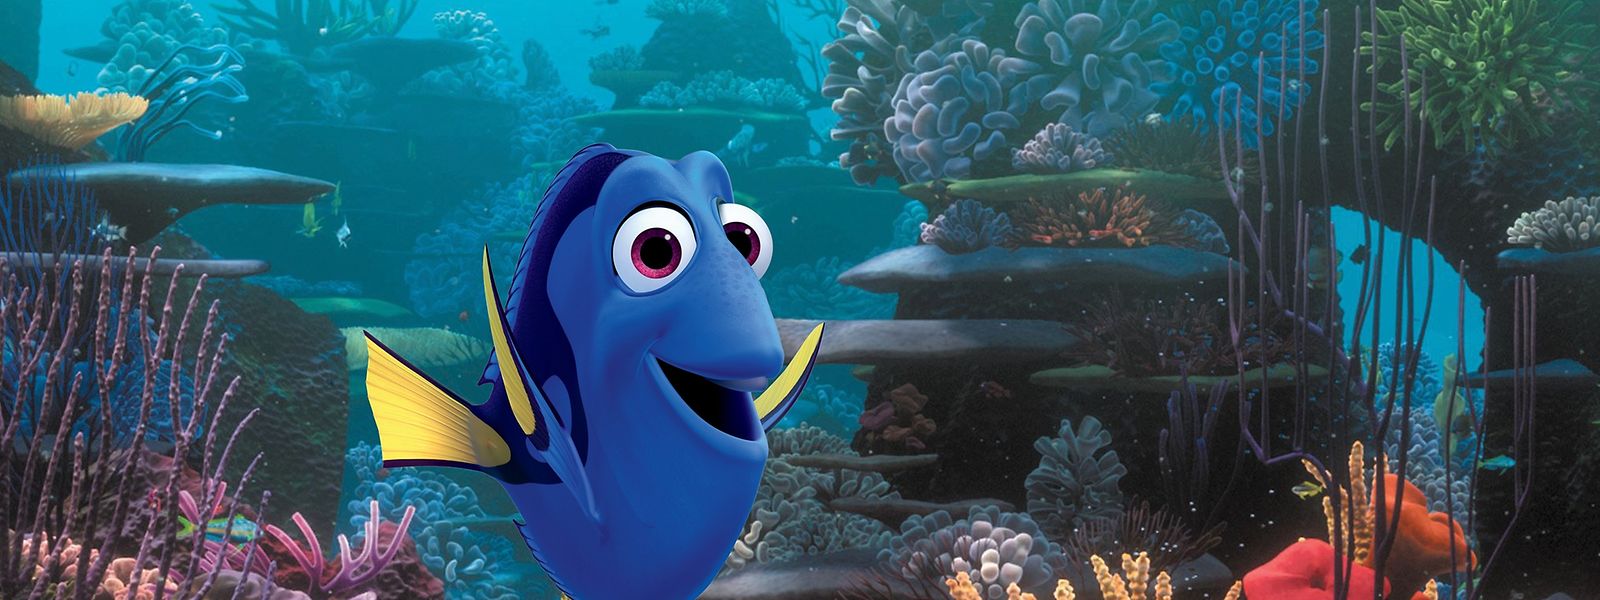 Dory aus Finding Nemo ist eine beliebte Disney-Figur. 